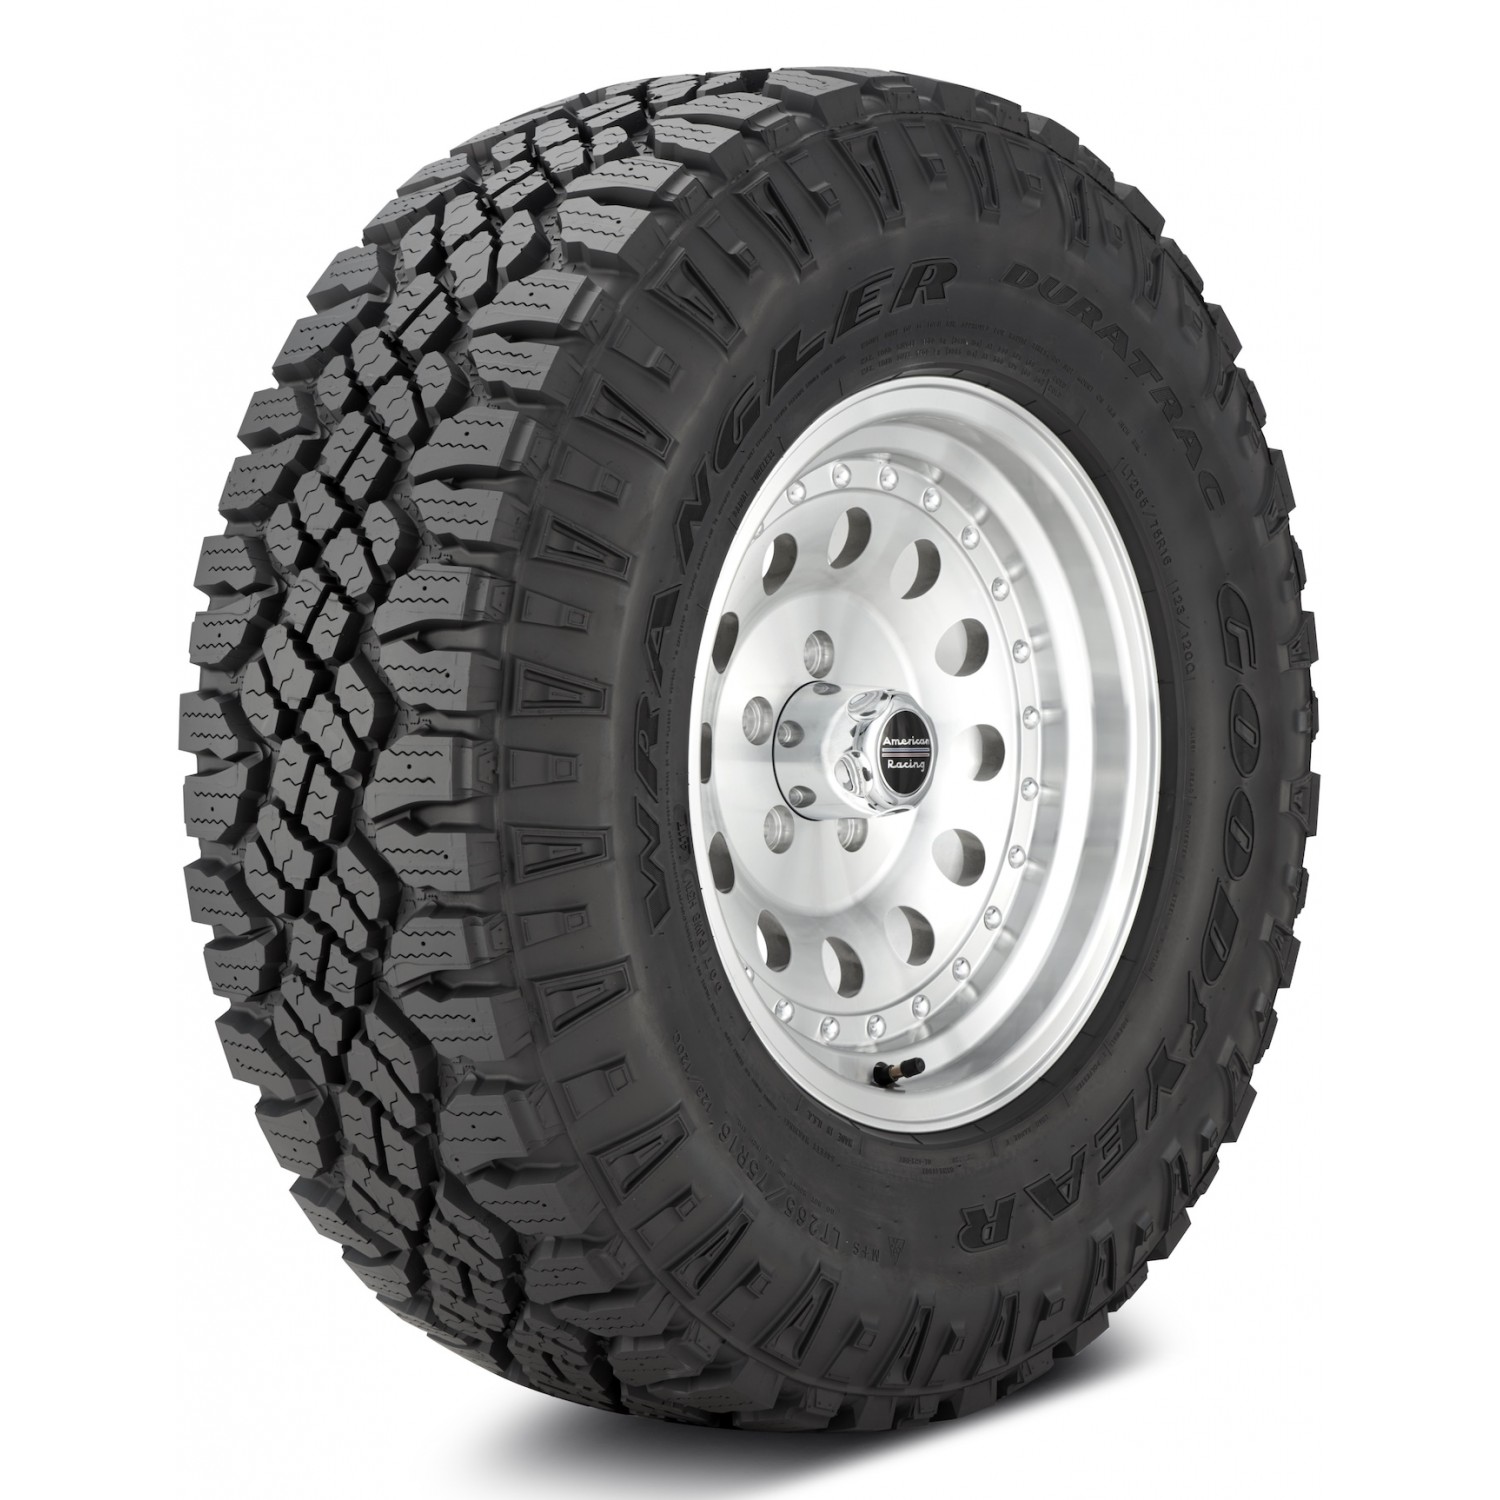 Goodyear Wrangler DuraTrac Black Sidewall Tire (LT295/70R17 121Q) vzn121161